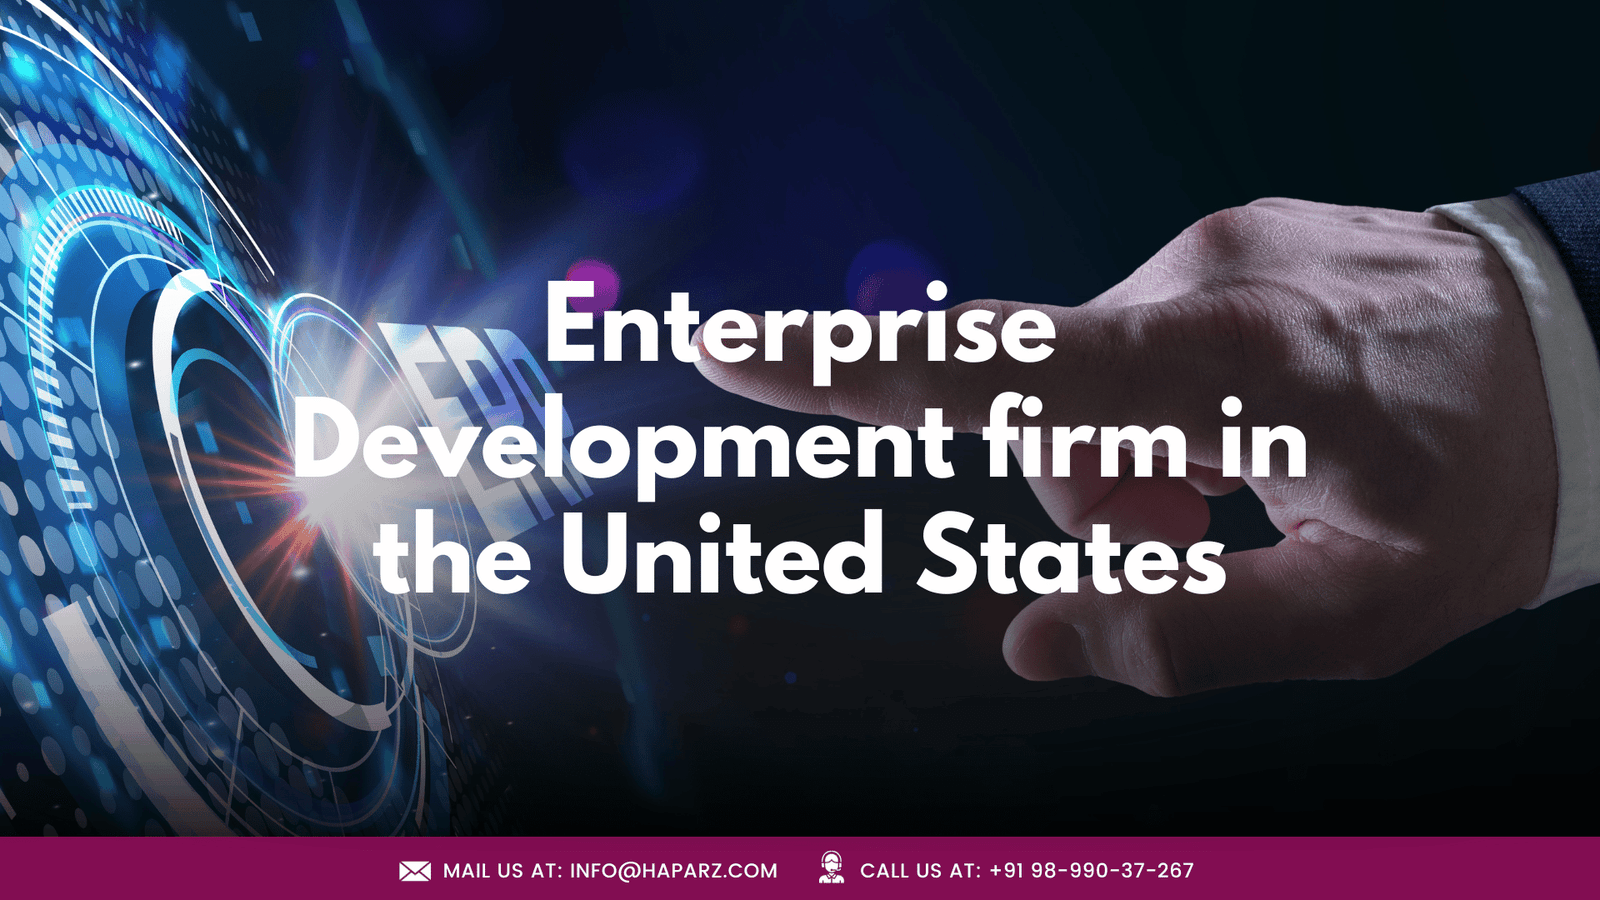 Enterprise development firm in US